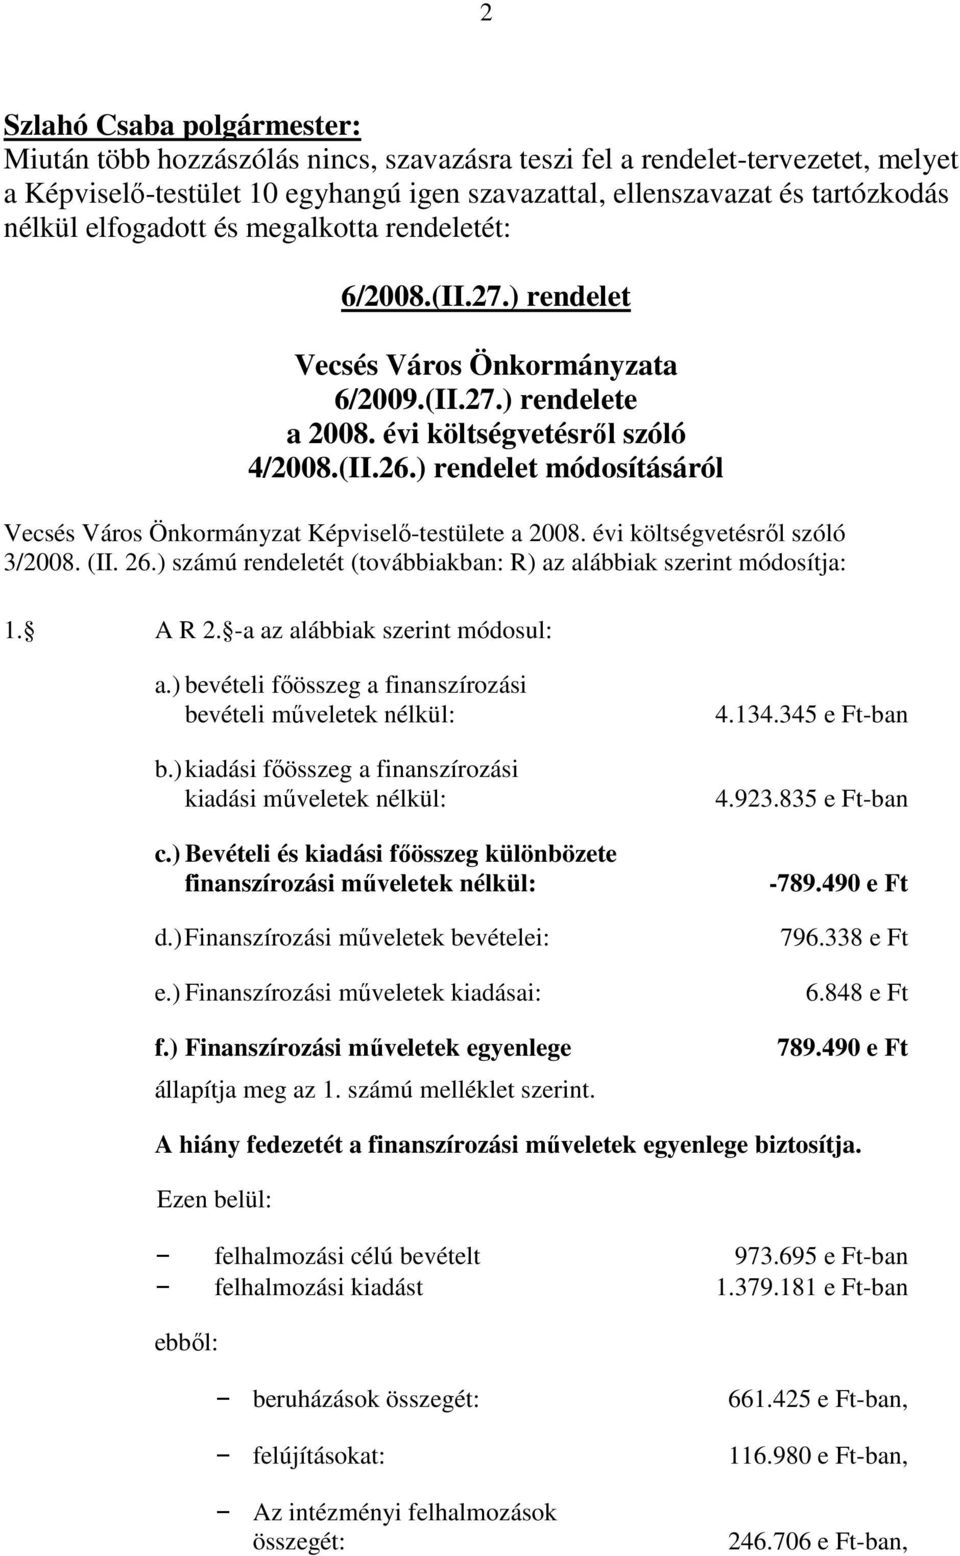 ) rendelet módosításáról Vecsés Város Önkormányzat Képviselı-testülete a 2008. évi költségvetésrıl szóló 3/2008. (II. 26.) számú rendeletét (továbbiakban: R) az alábbiak szerint módosítja: 1. A R 2.